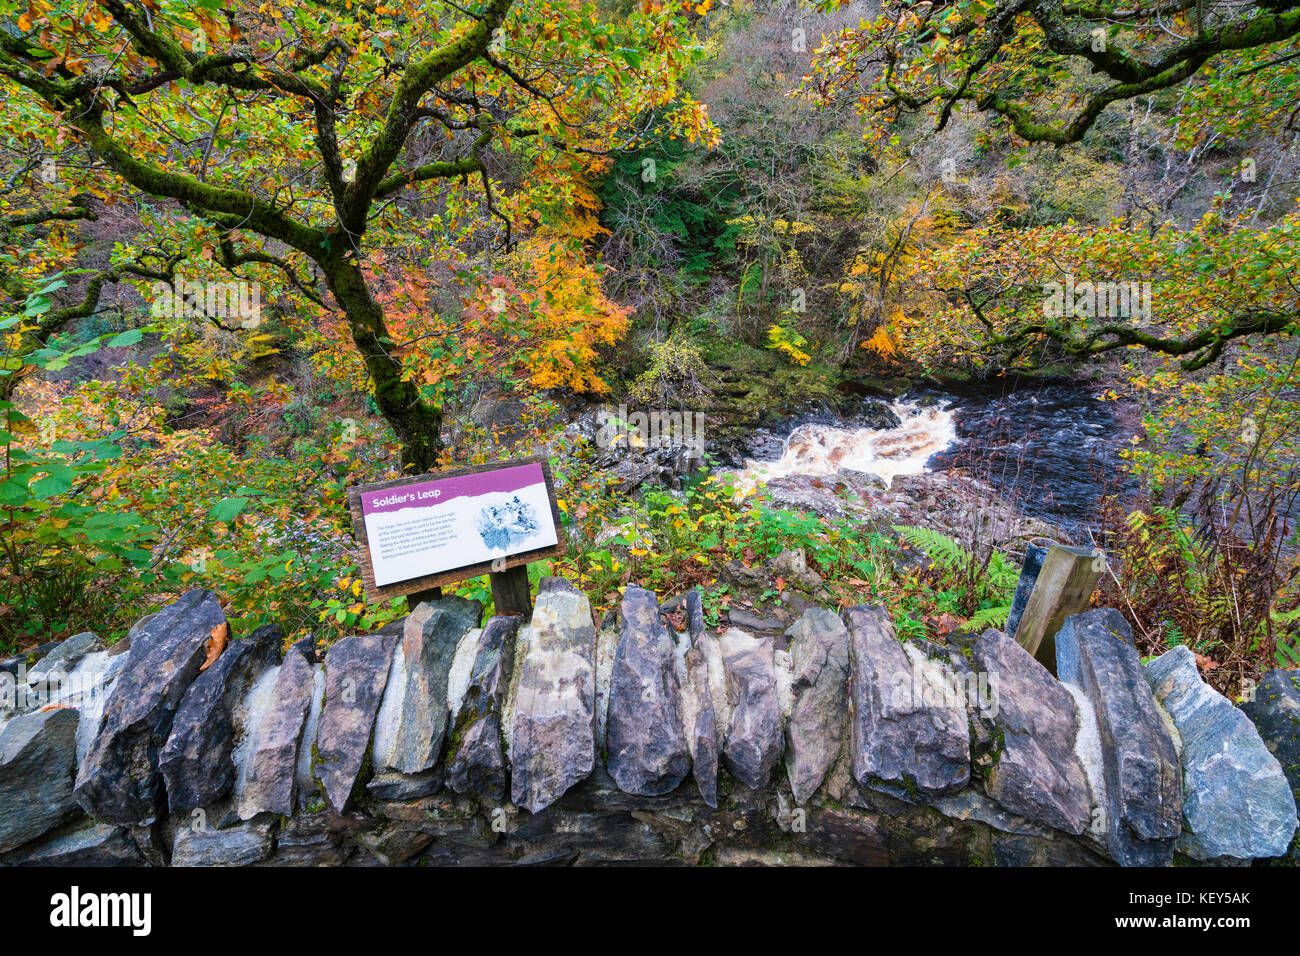 Couleurs d'automne spectaculaire en bois naturel sur les rives de la rivière Garry historique au col de Killiecrankie à soldier's leap près de Pitlochry. Banque D'Images